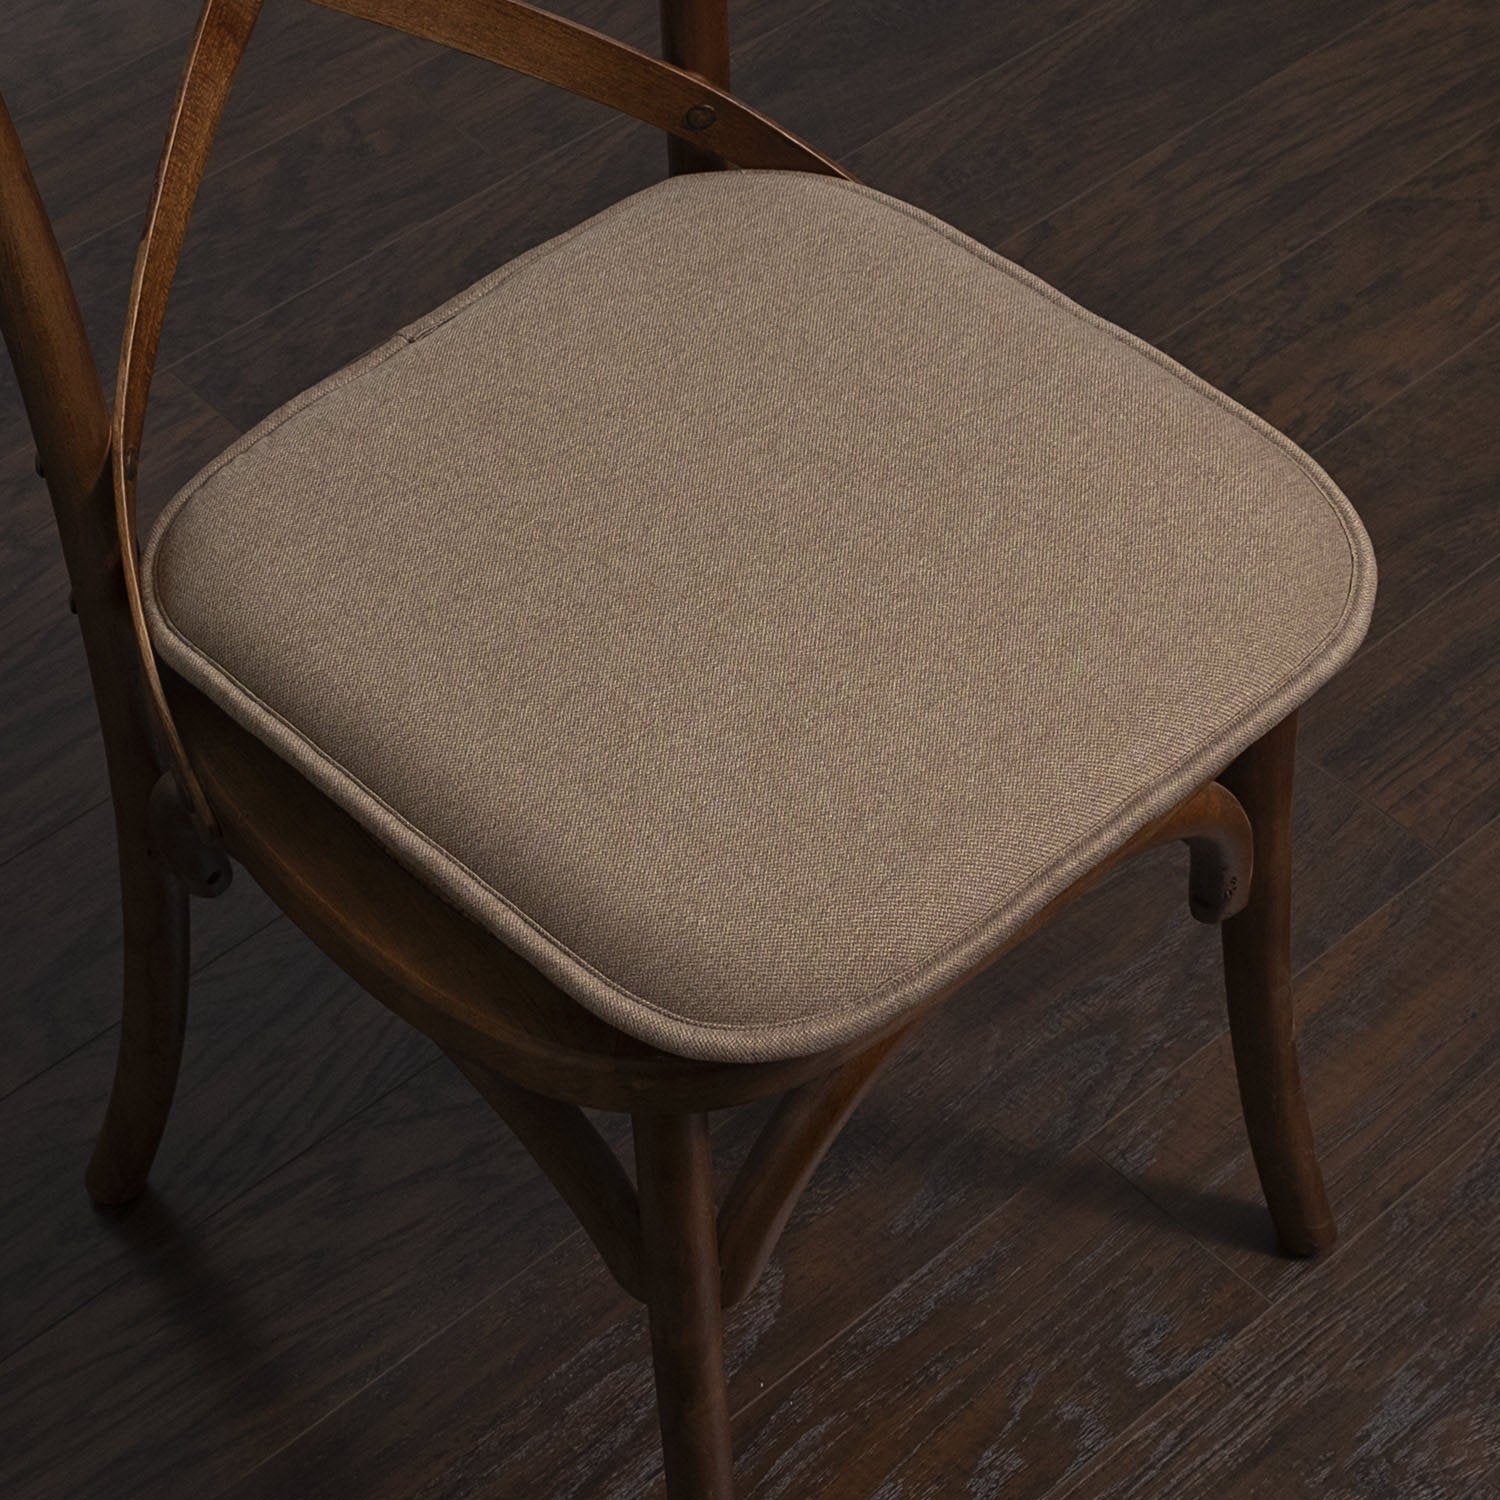 Charlotte Jacquard Chair Cushion Set Taupe - Chair